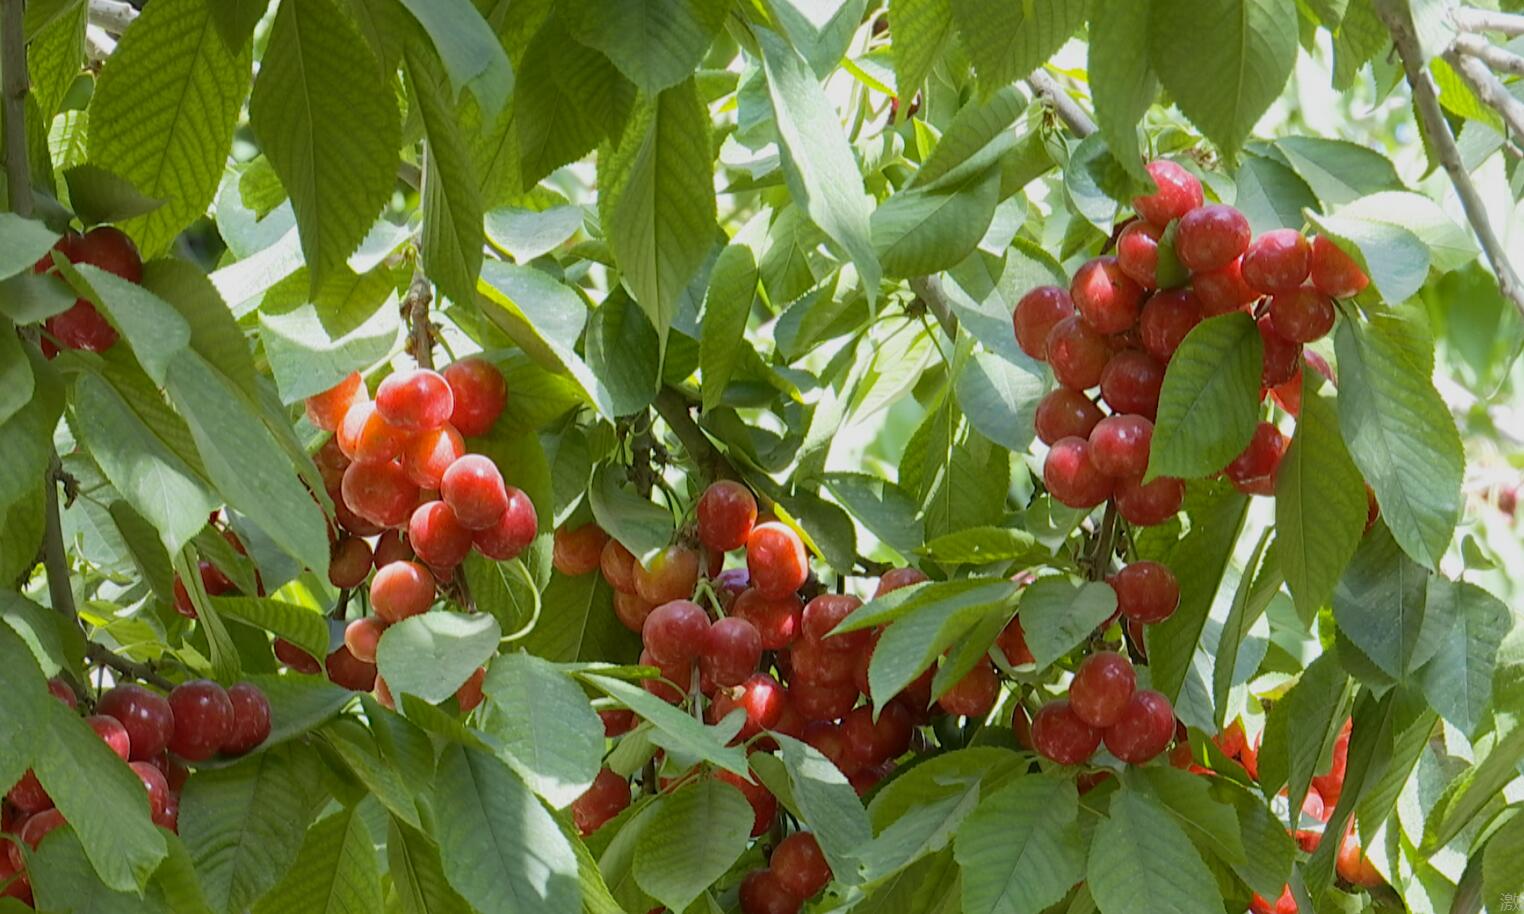 樱桃种植户司马义·吾买尔今年种了2亩樱桃,他预计仅此一项就能收入上